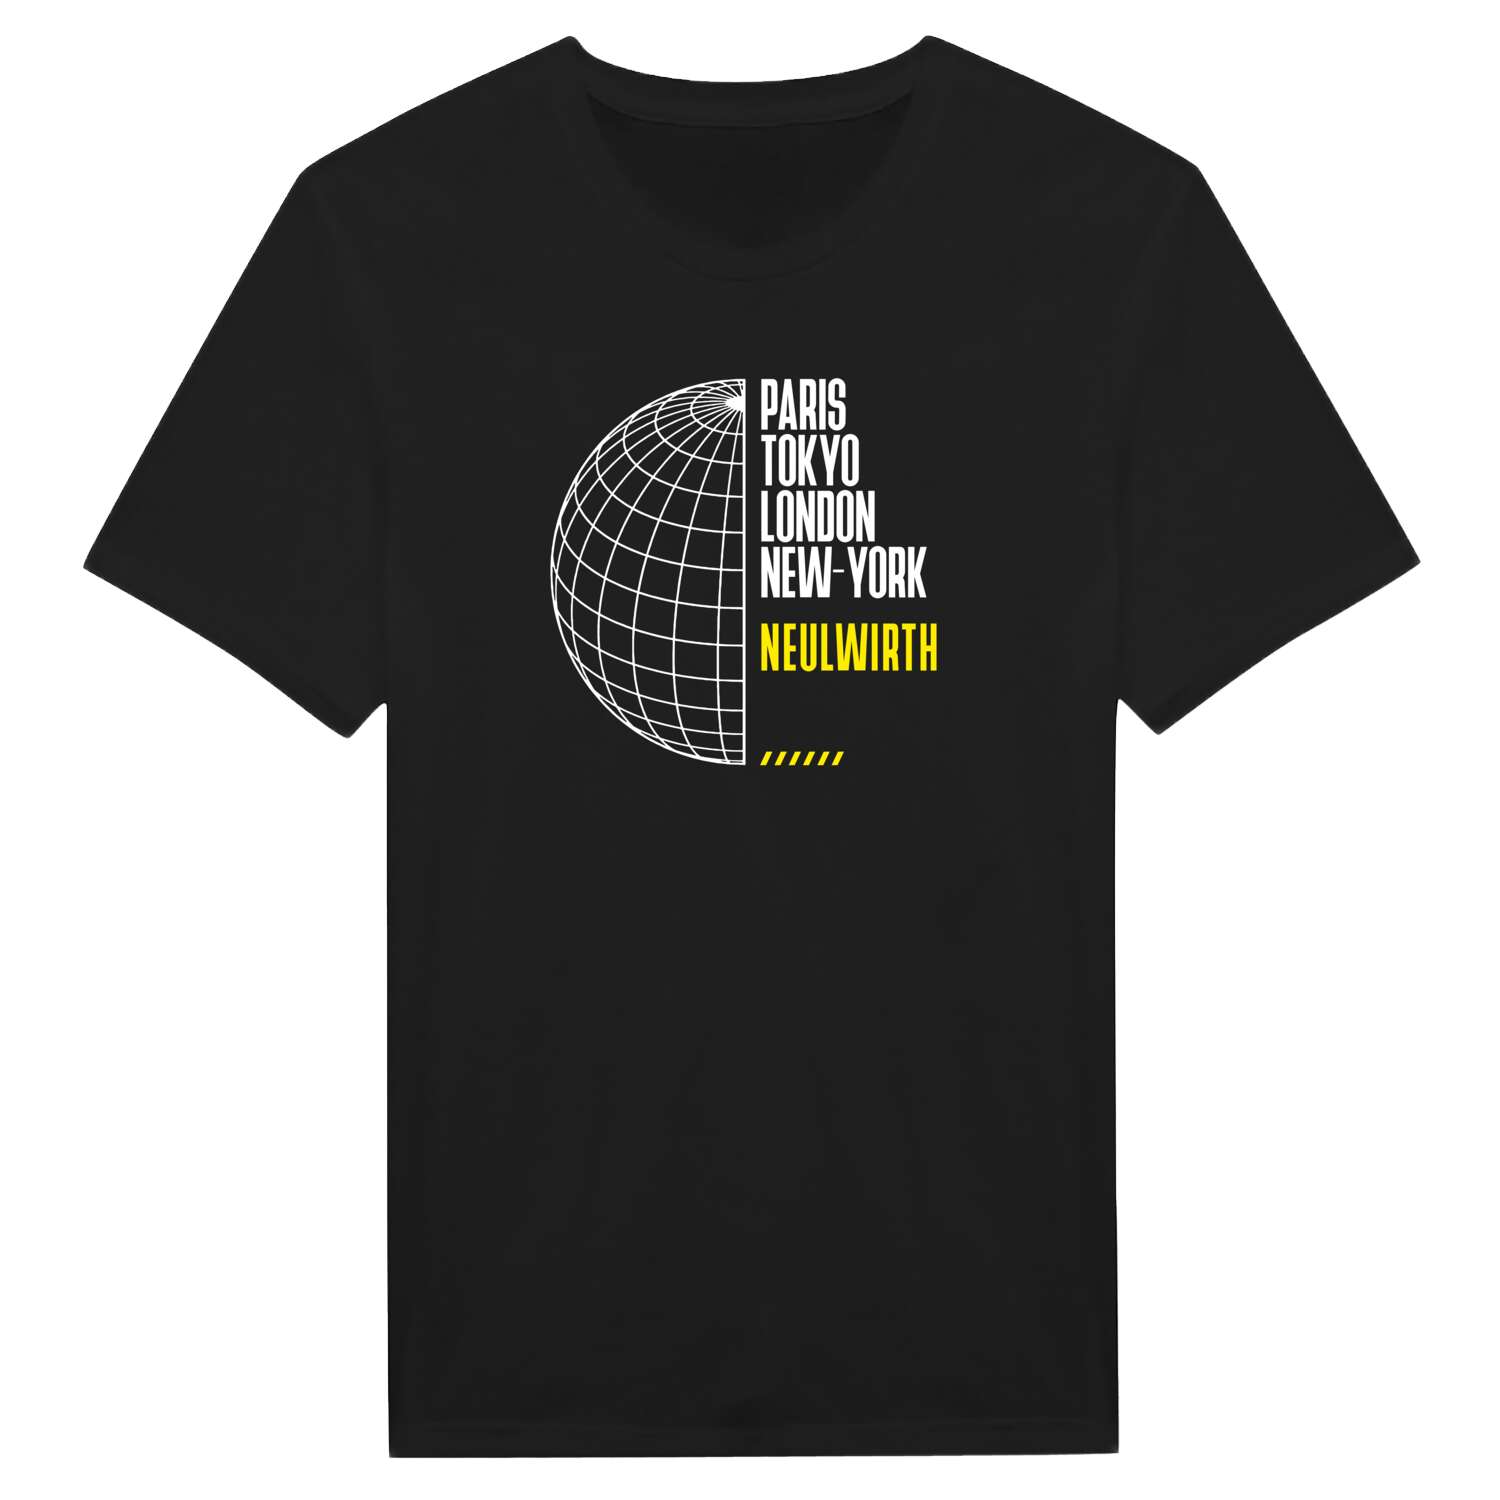 Neulwirth T-Shirt »Paris Tokyo London«